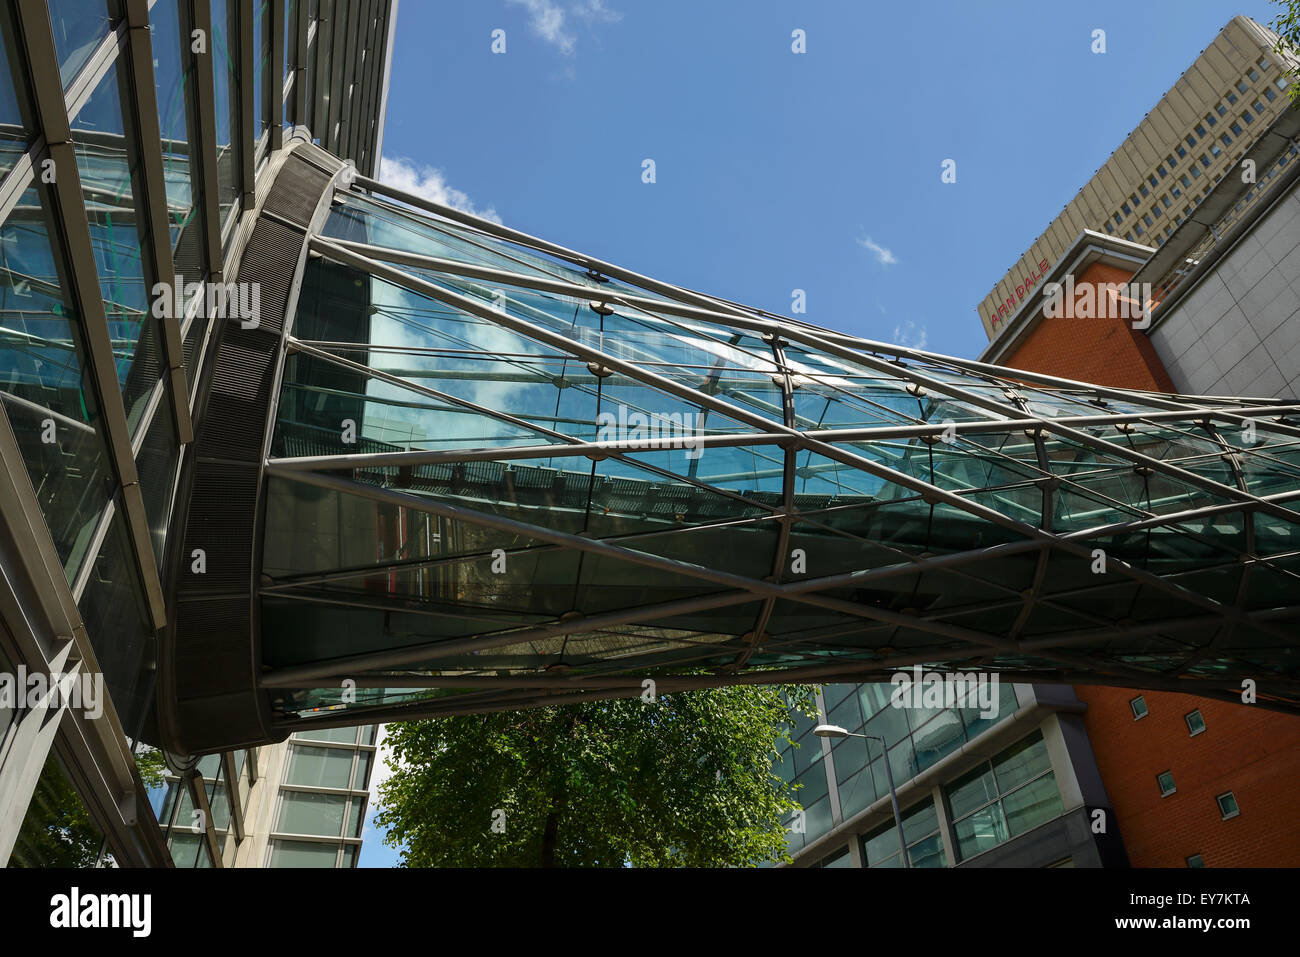 La passerelle au-dessus de verre Corporation Street à Manchester qui connecte l'Arndale shopping precinct à Marks and Spencer Banque D'Images